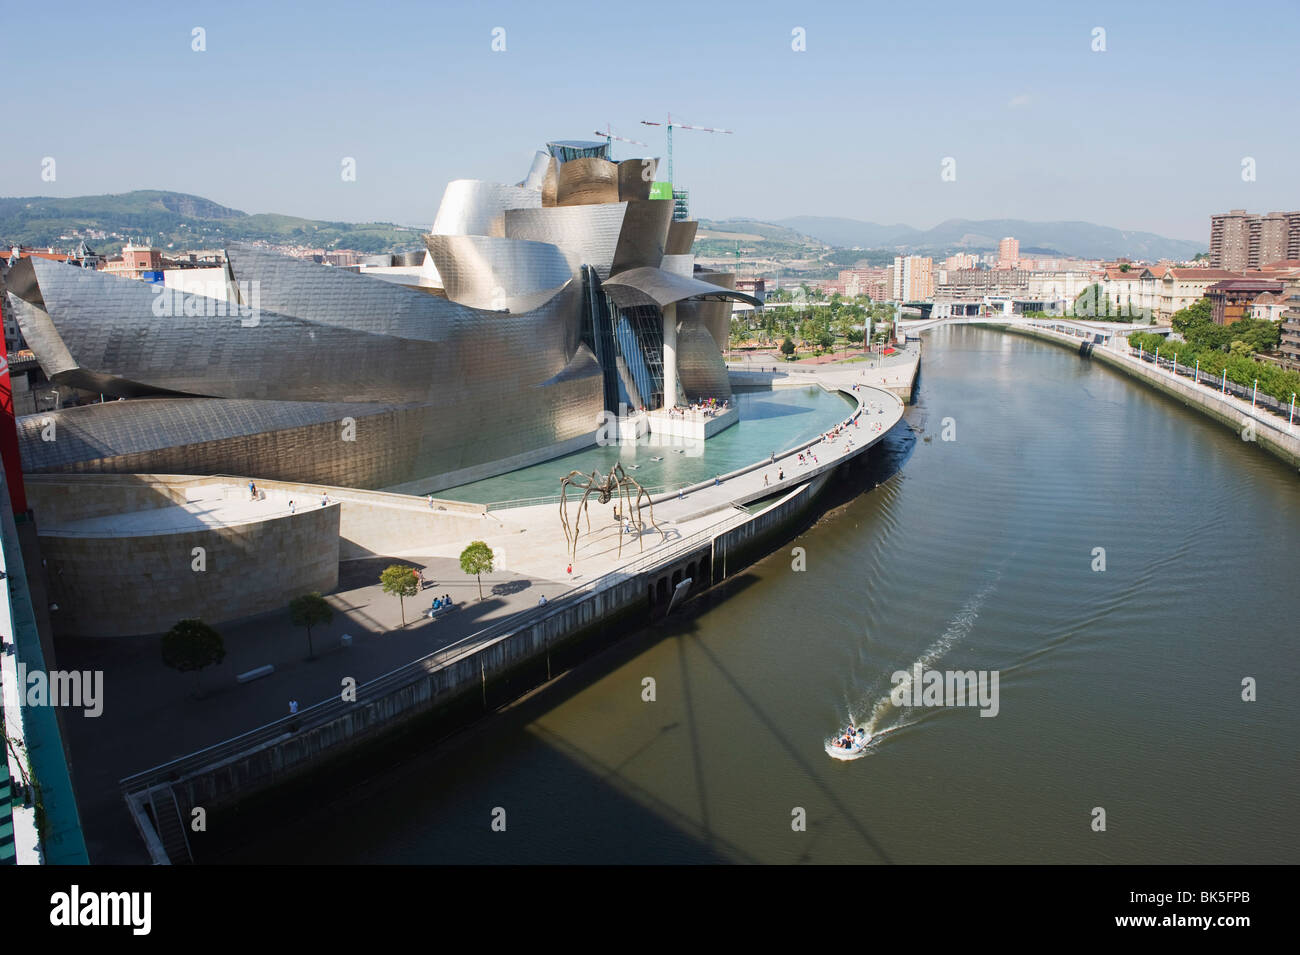 Le Guggenheim, conçu par l'architecte Frank Gehry, canado-américaine sur la rivière Nervion, Bilbao, Pays Basque, Espagne, Europe Banque D'Images